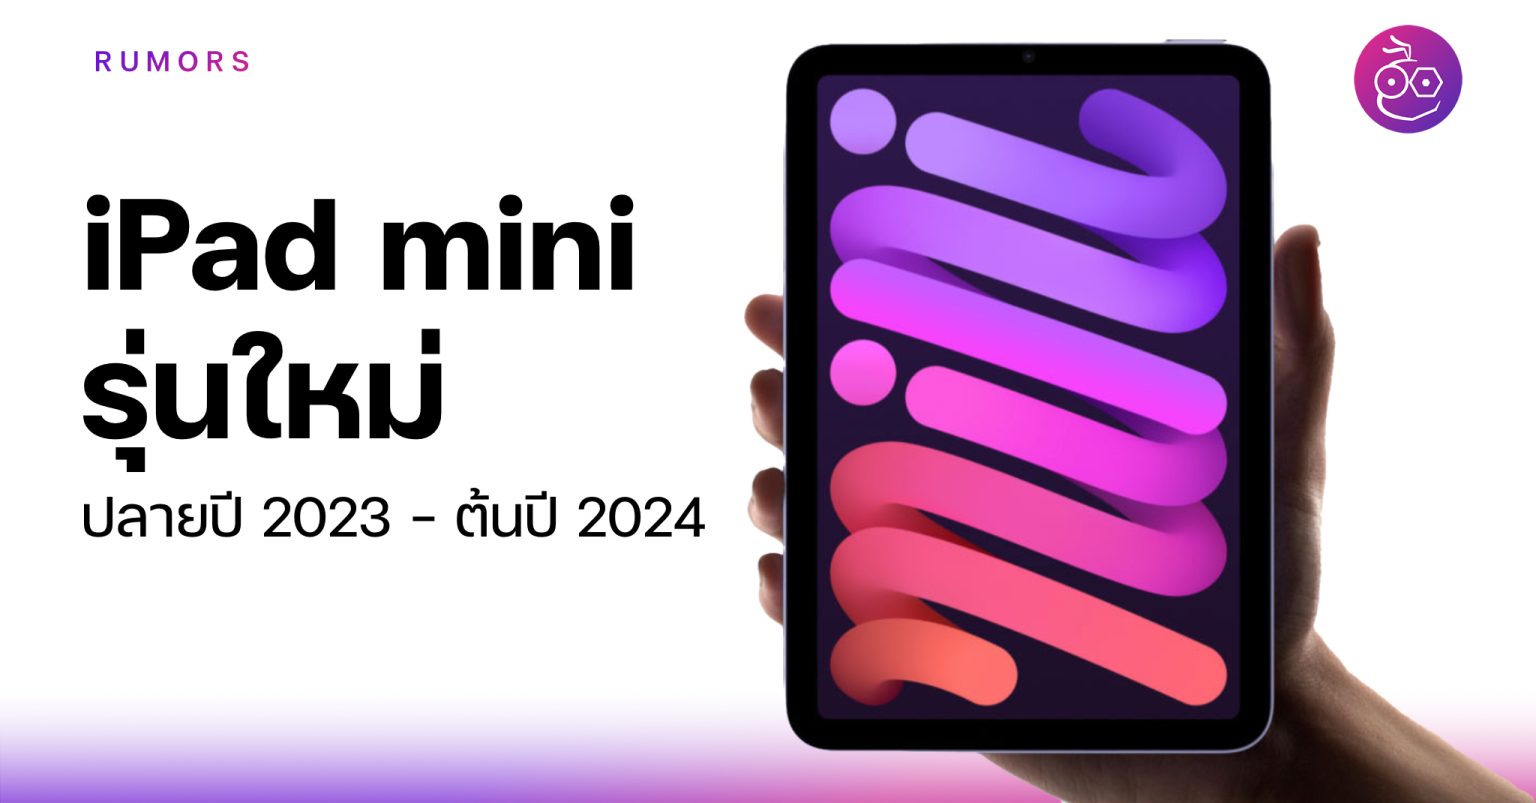 ลือ! Apple อาจเปิดตัว เปิดขาย iPad mini ใหม่ปลายปี 2023 ต้นปี 2024